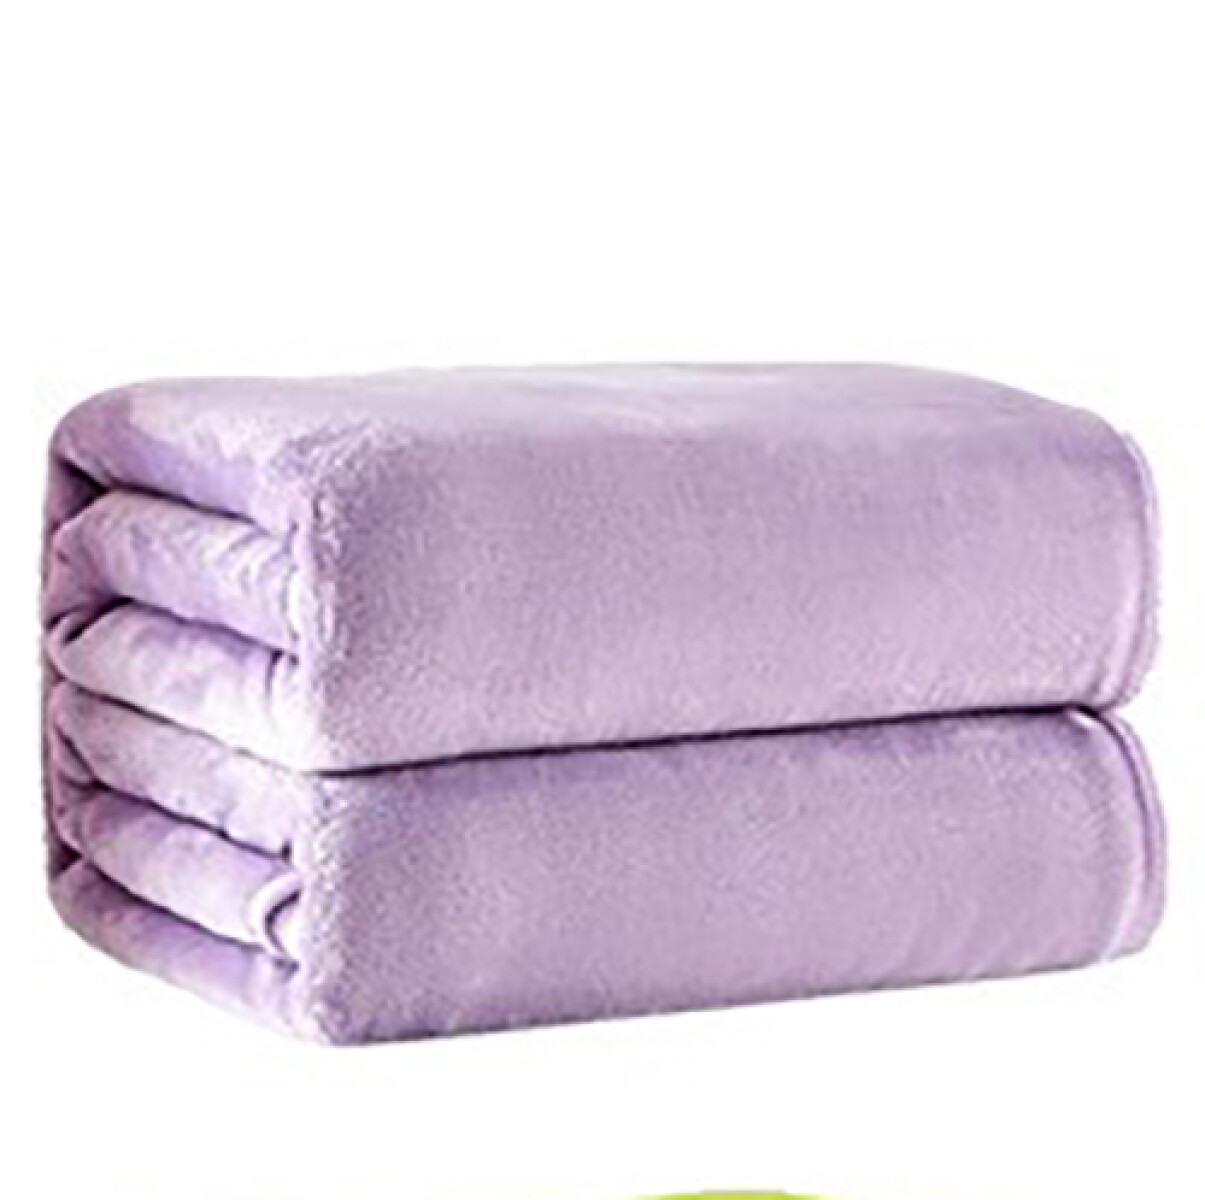 Manta piel de durazno 2 plazas - Violeta lavanda 